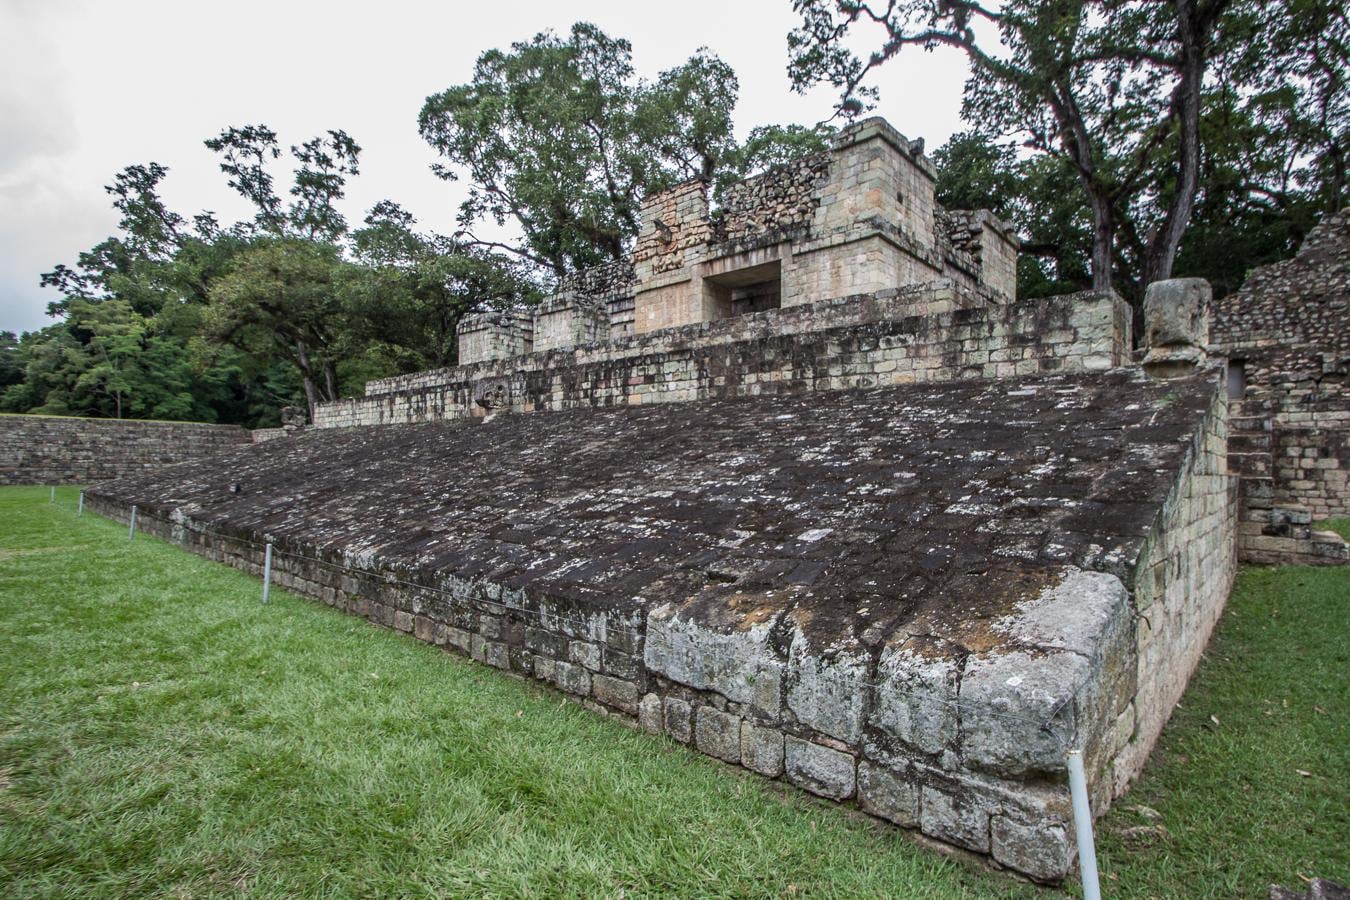 Una gran fuente de información de la cultura maya. Ubicadas en el sur de lo que se conoce como La Ruta Maya, las Ruinas de Copán alcanzaron su esplendor entre los siglos V y IX de nuestra era y fueron reconocidas por la Unesco como Patrimonio de la Humanidad en 1980. Destaca en el Parque Arqueológico de Copán Ruinas, la Escalinata de Jeroglíficos, que contiene el texto escrito más extenso del mundo y que cuenta con más de 2000 signos o glifos, que así es como se denomina a la escritura maya.